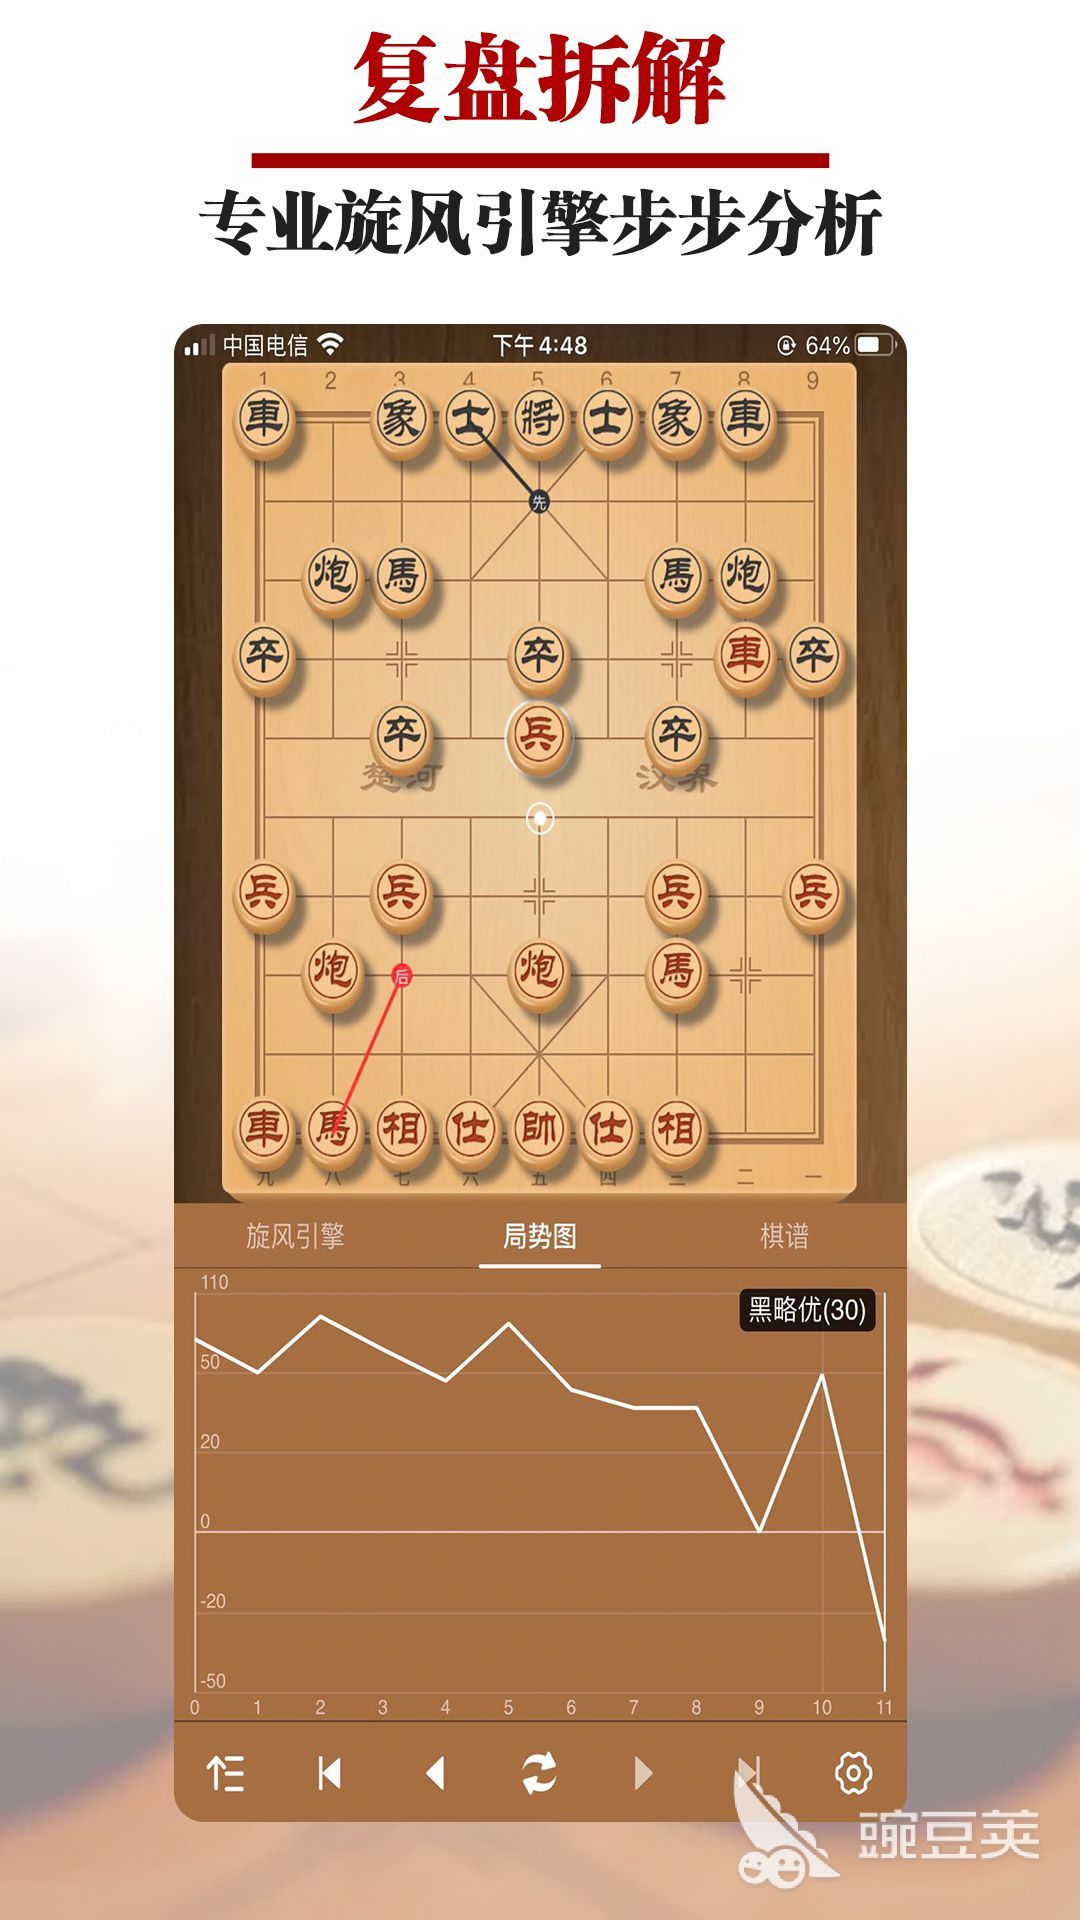 象棋app下载分享 象棋软件哪个更好用